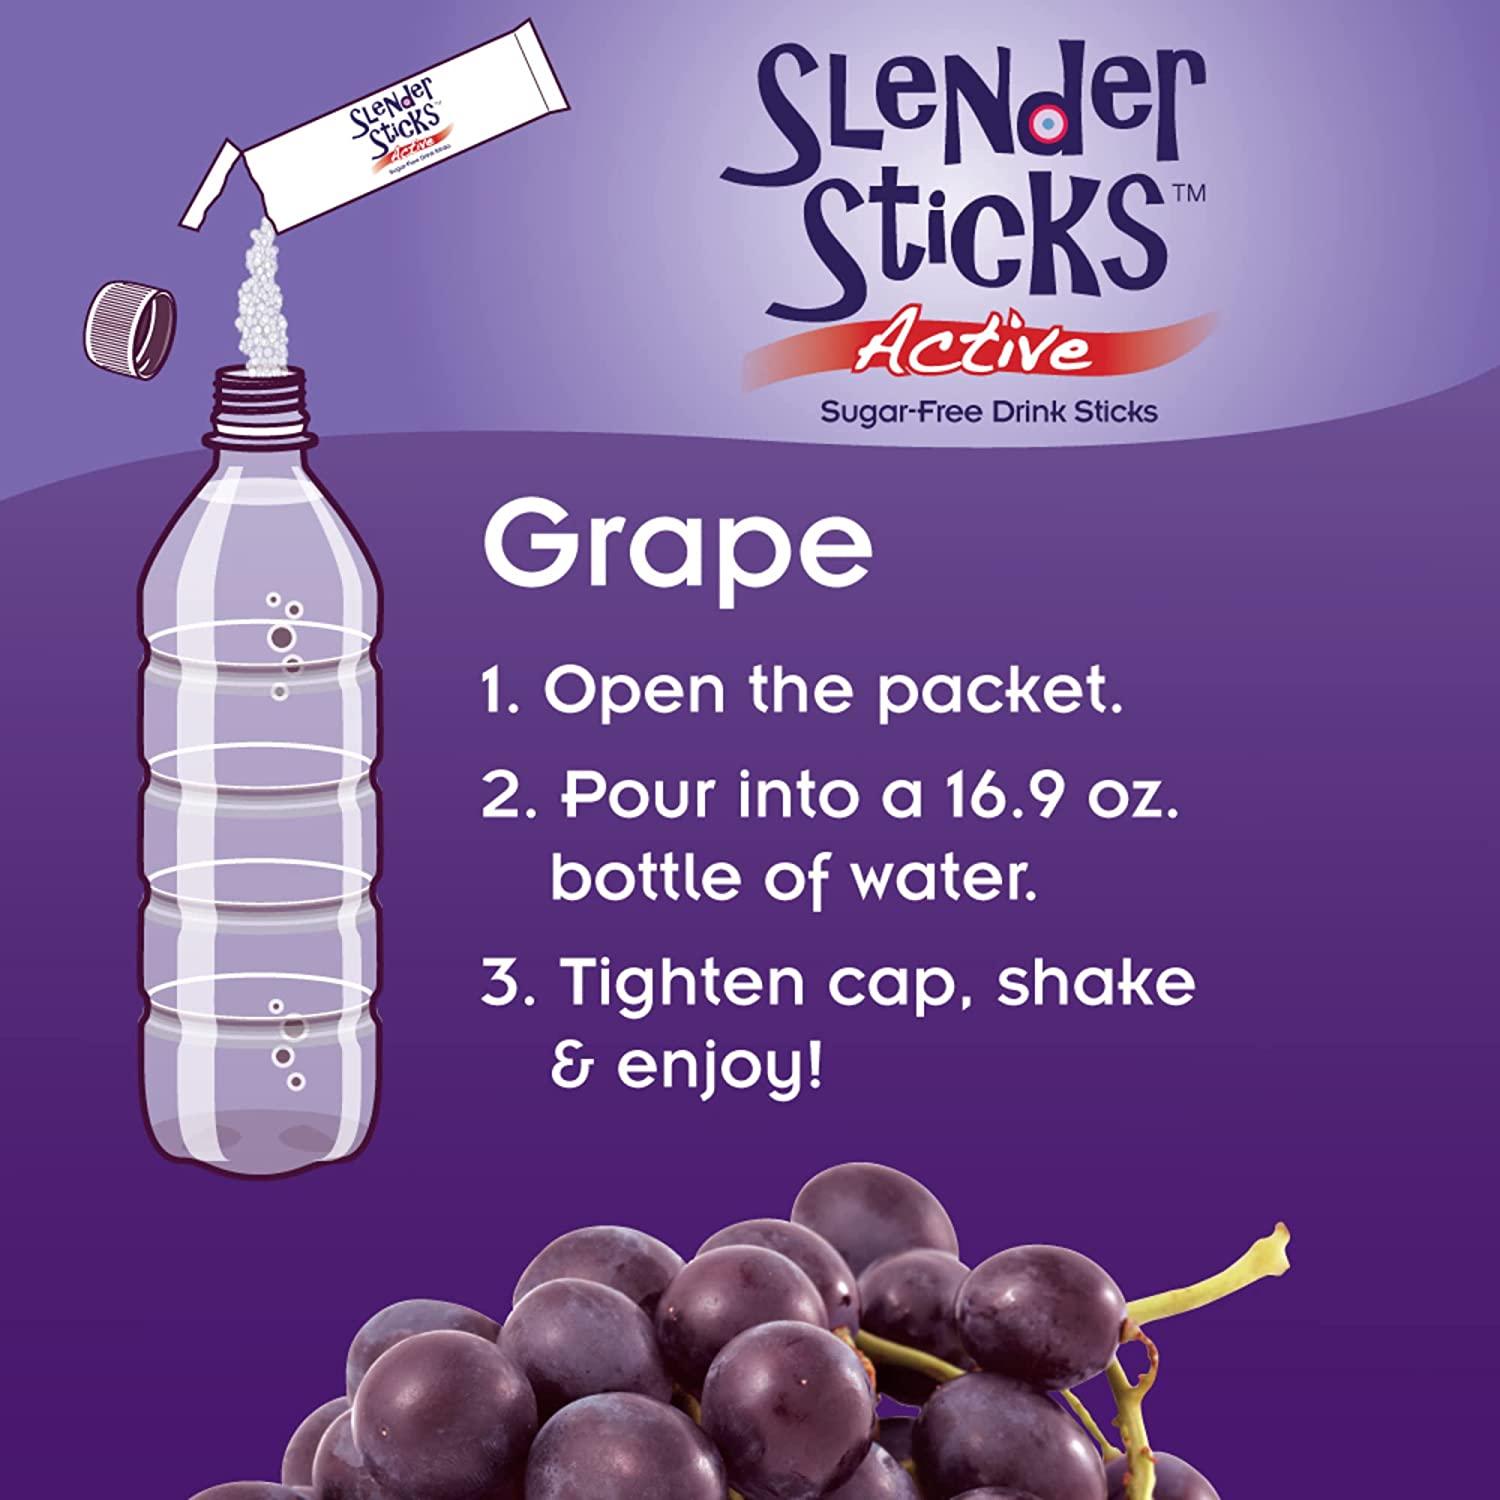 Now Foods Real Food Slender Sticks Active Grape 12 Sticks 17 oz (48 g)